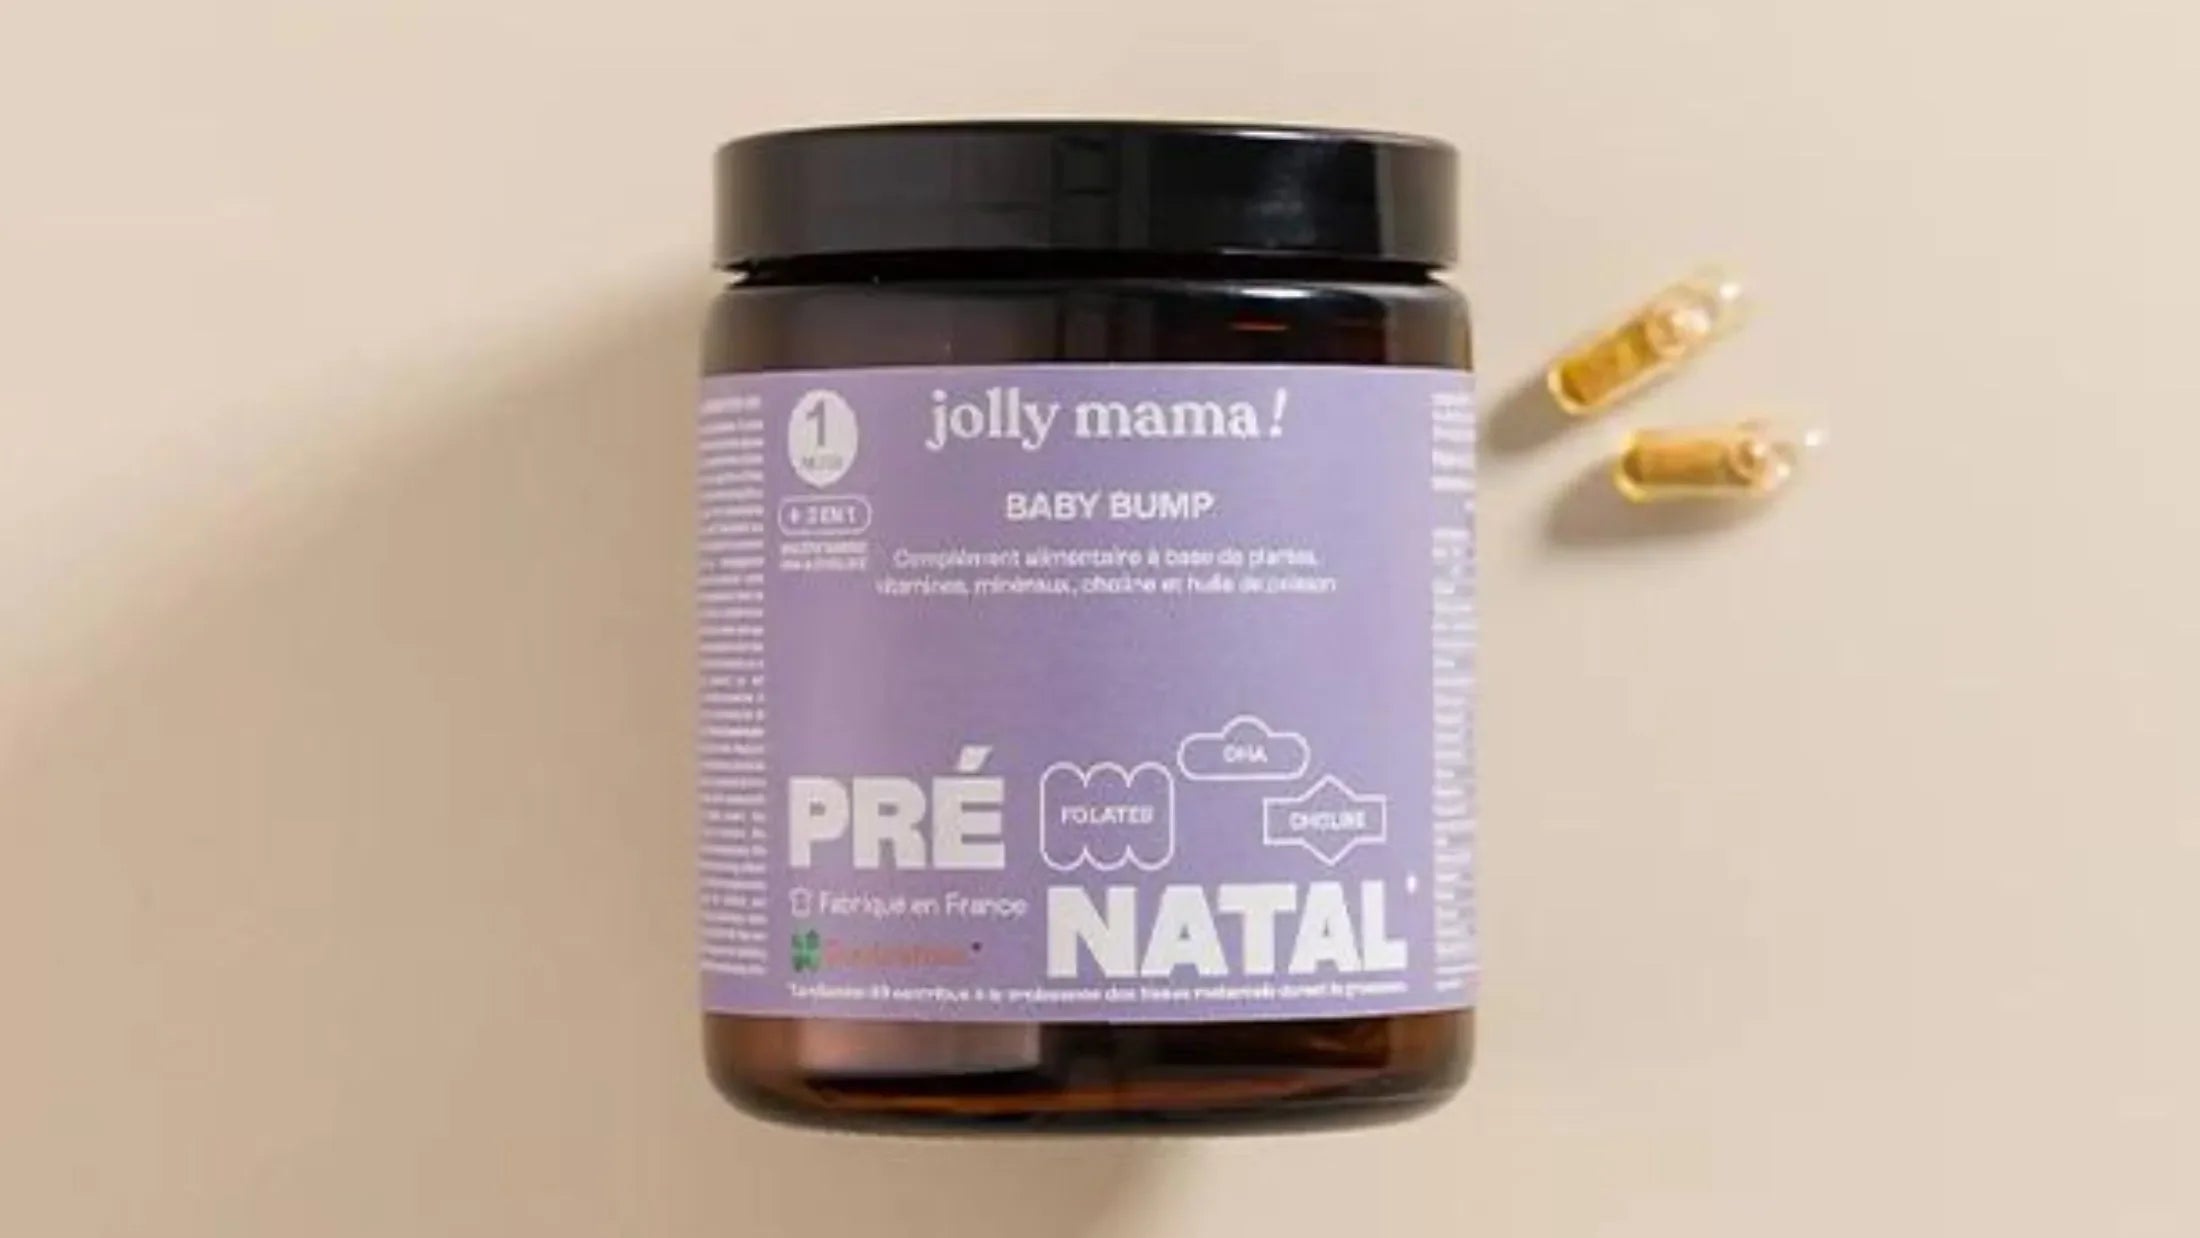 Jolly Mama lance une gamme prénatale!